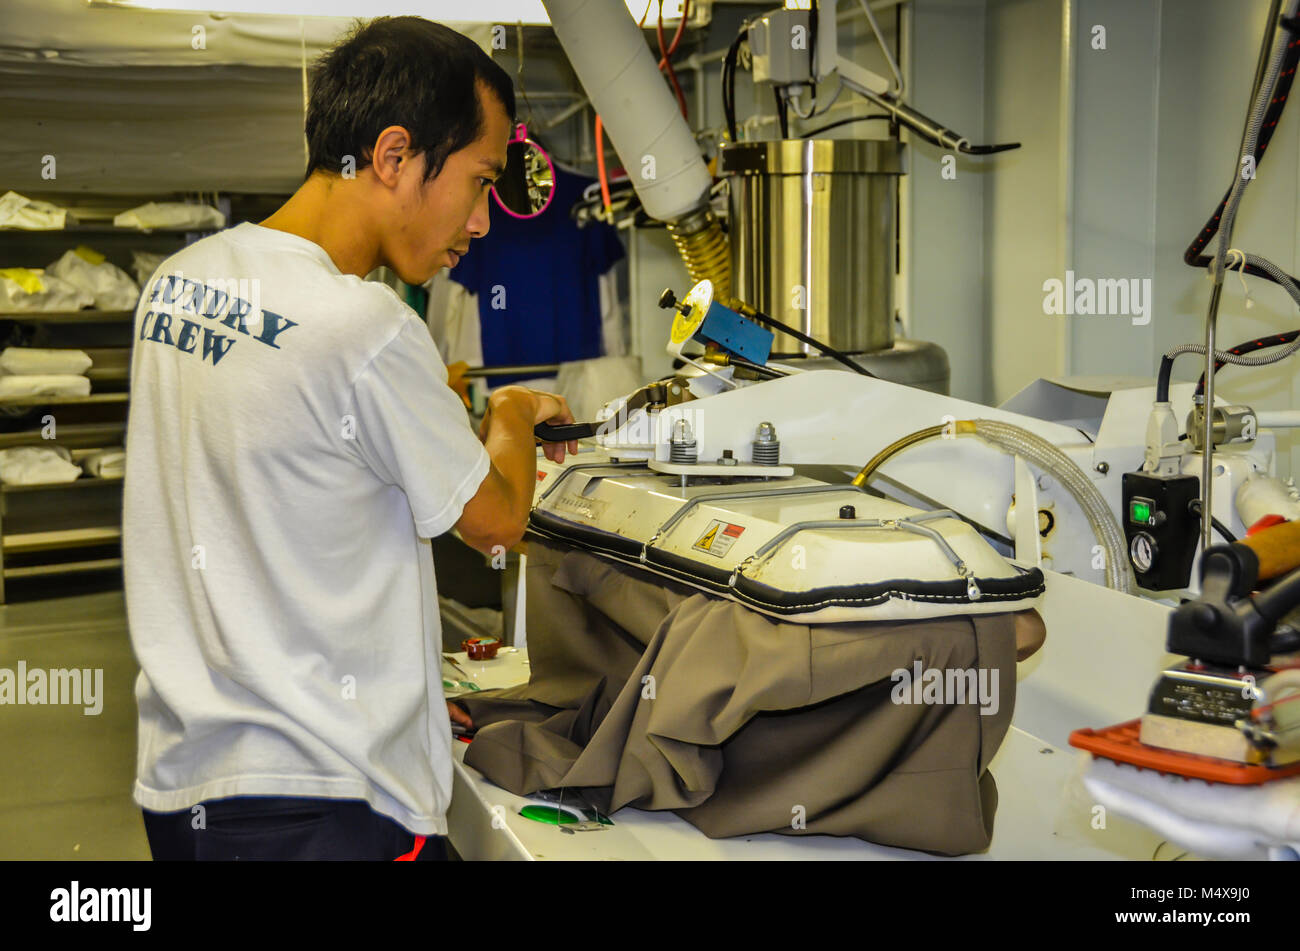 Wäscheservice Arbeiter pressen Anzugjacke auf industriellen Eisen in großer Waschraum Ausstattung des Kreuzfahrtschiffes. Stockfoto